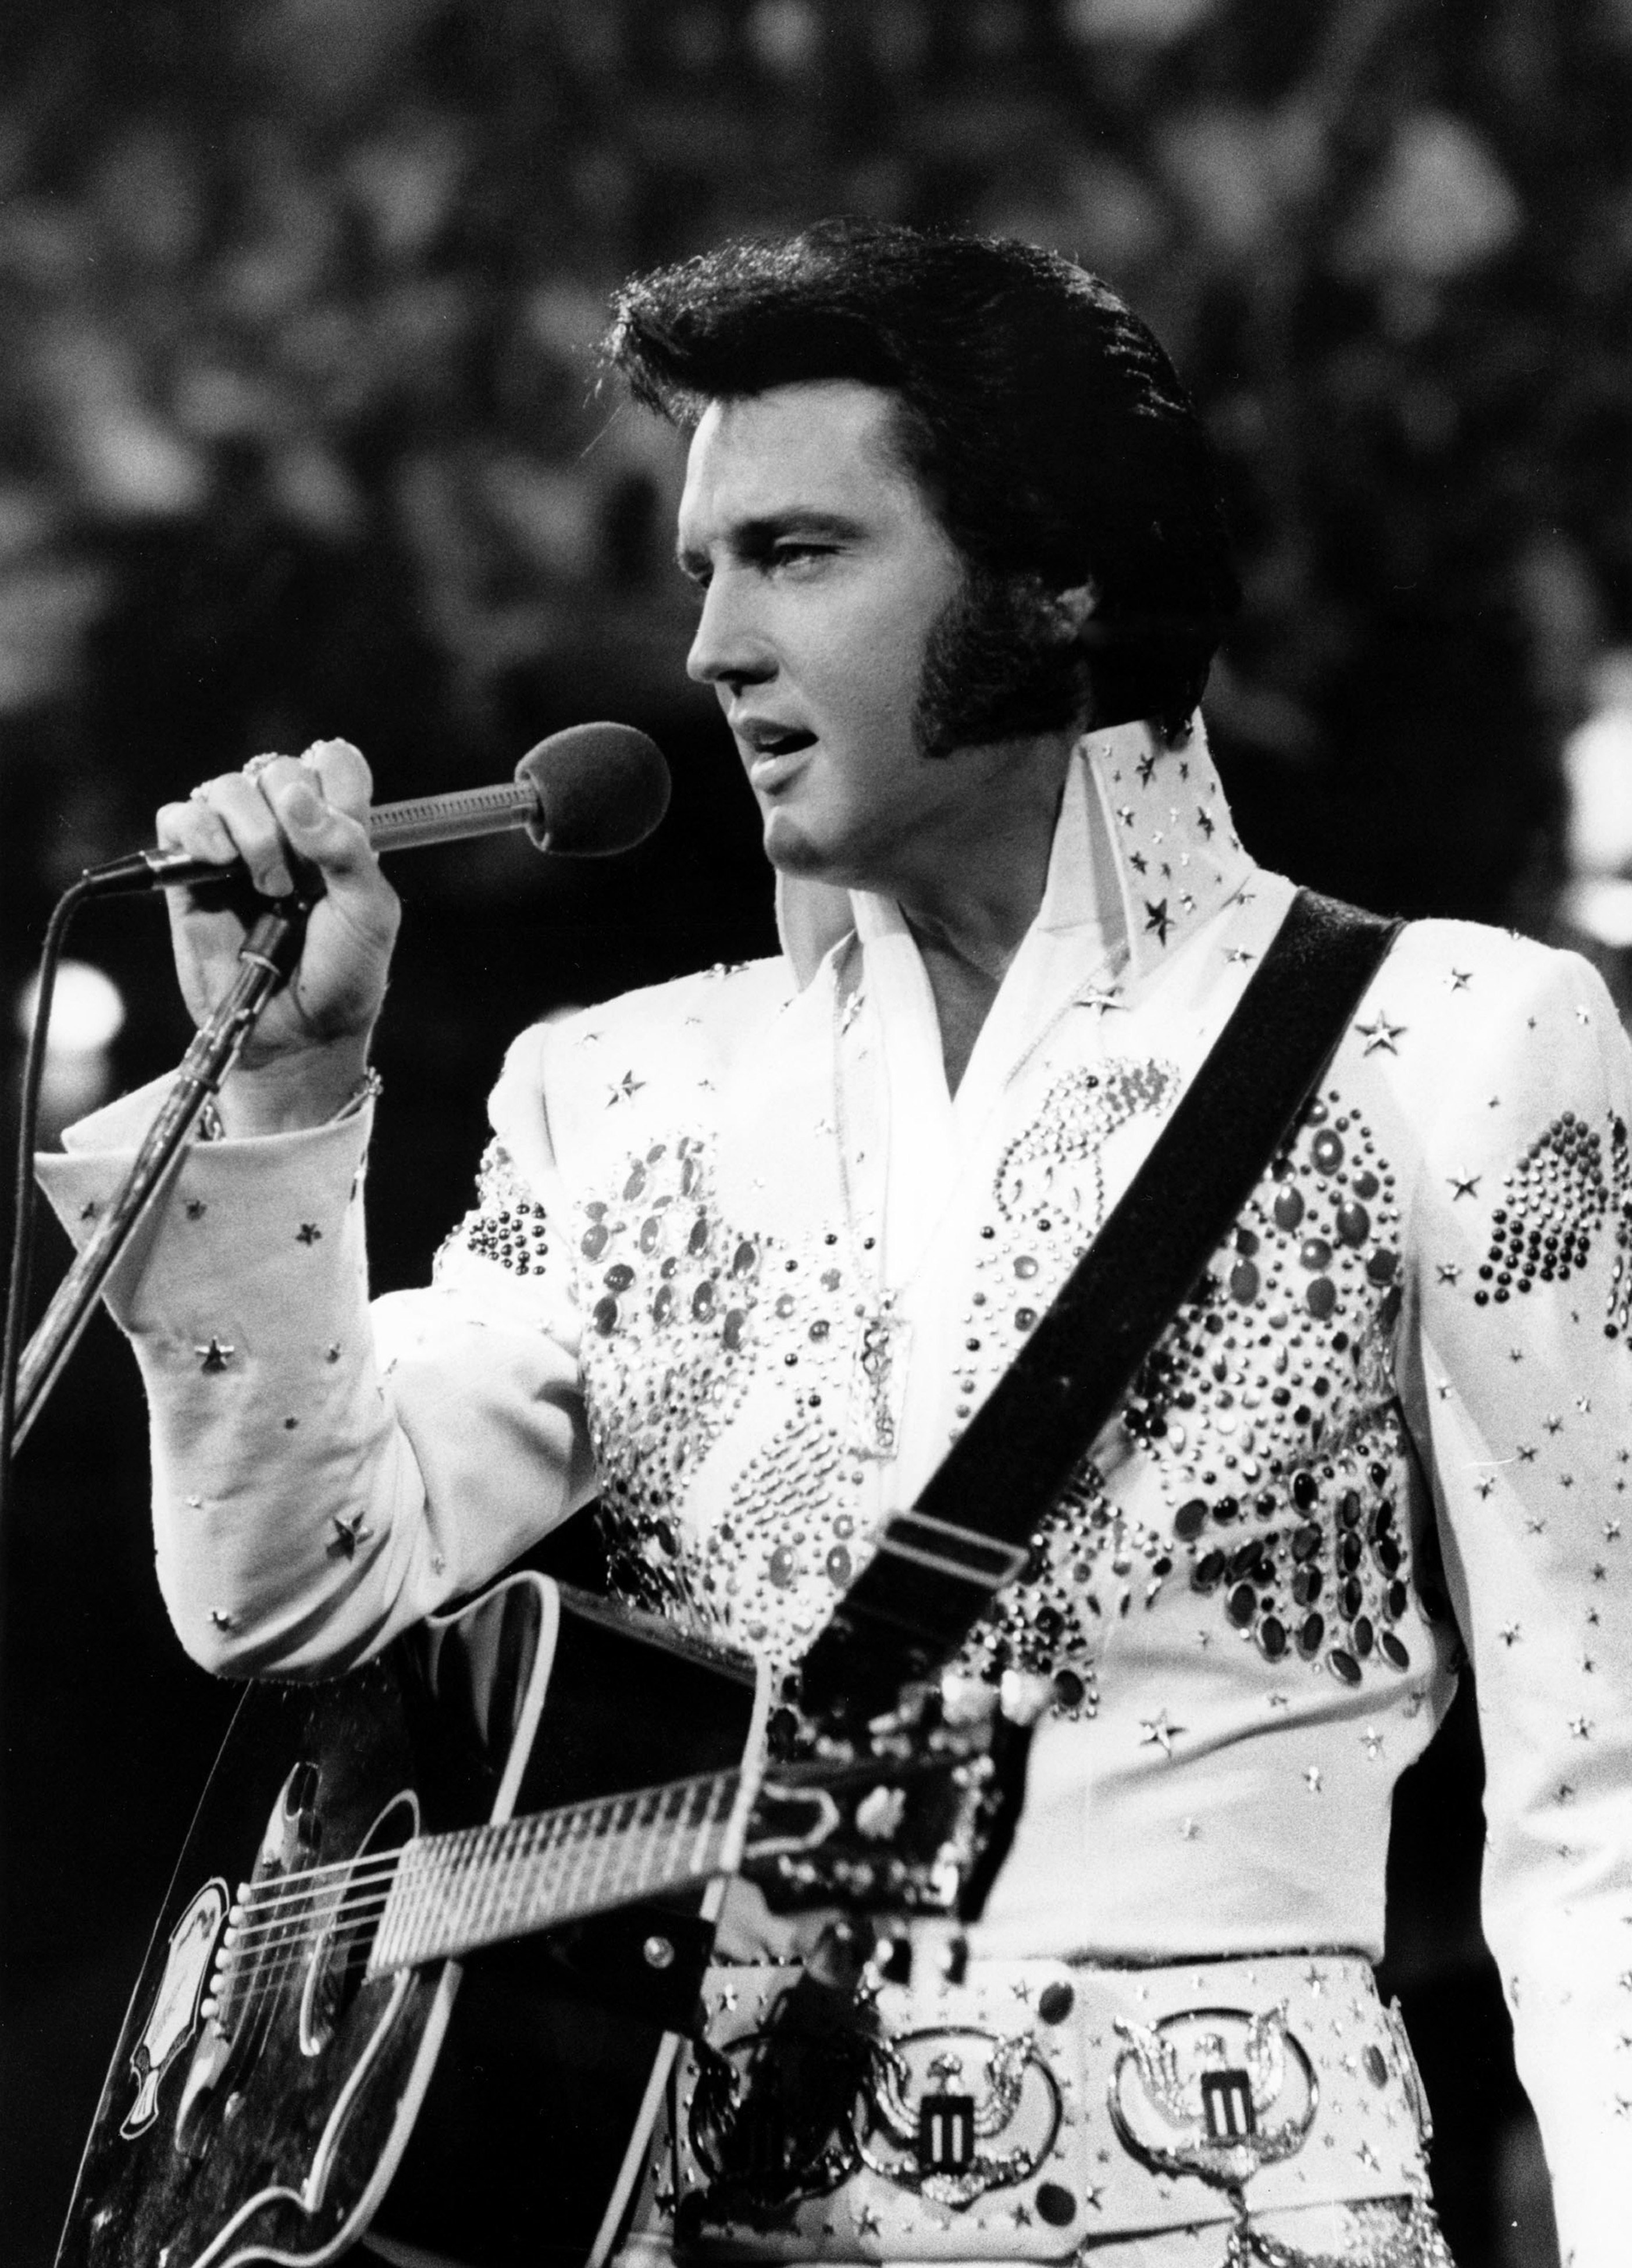 Elvis performing onstage